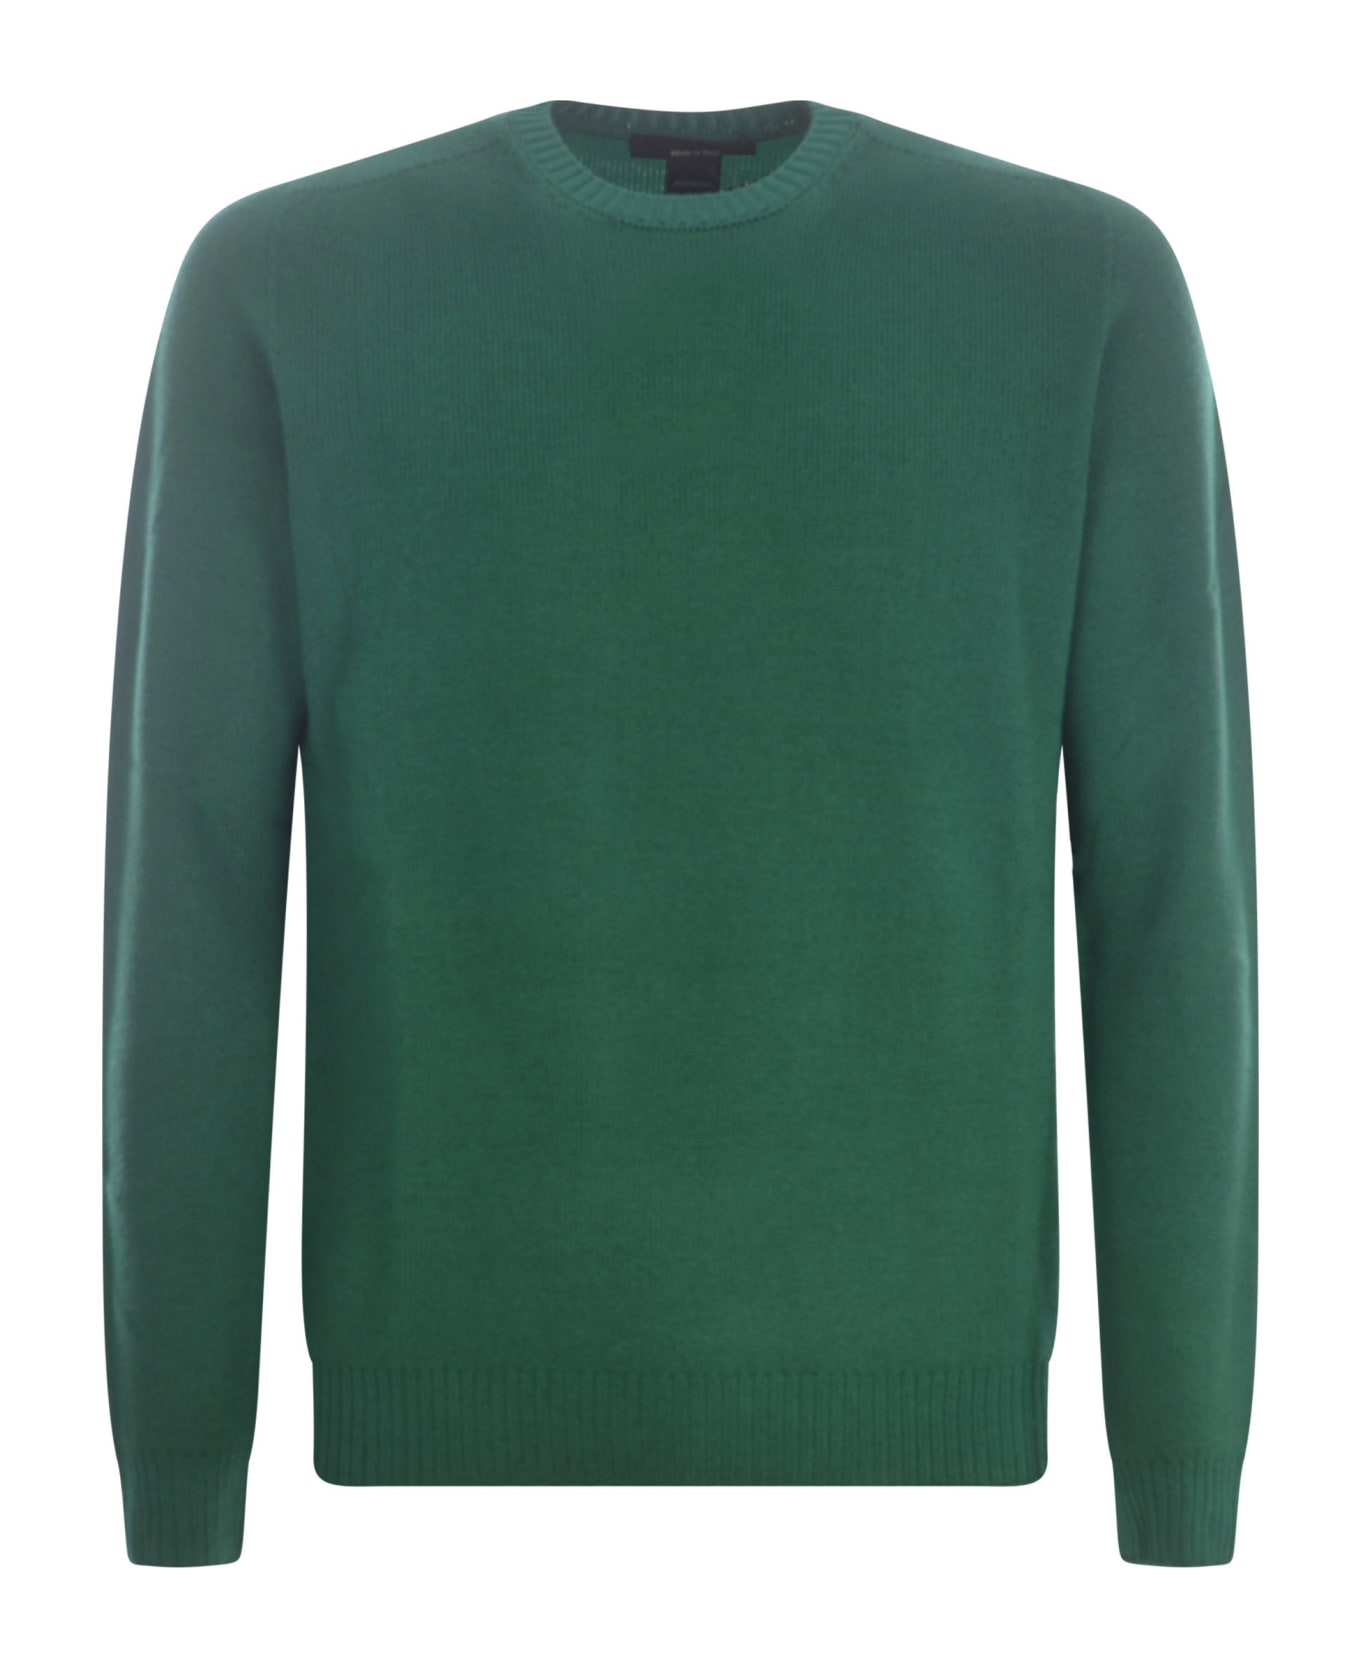 Jeordie's Sweater Jeordie's In Merino Wool - Verde ニットウェア